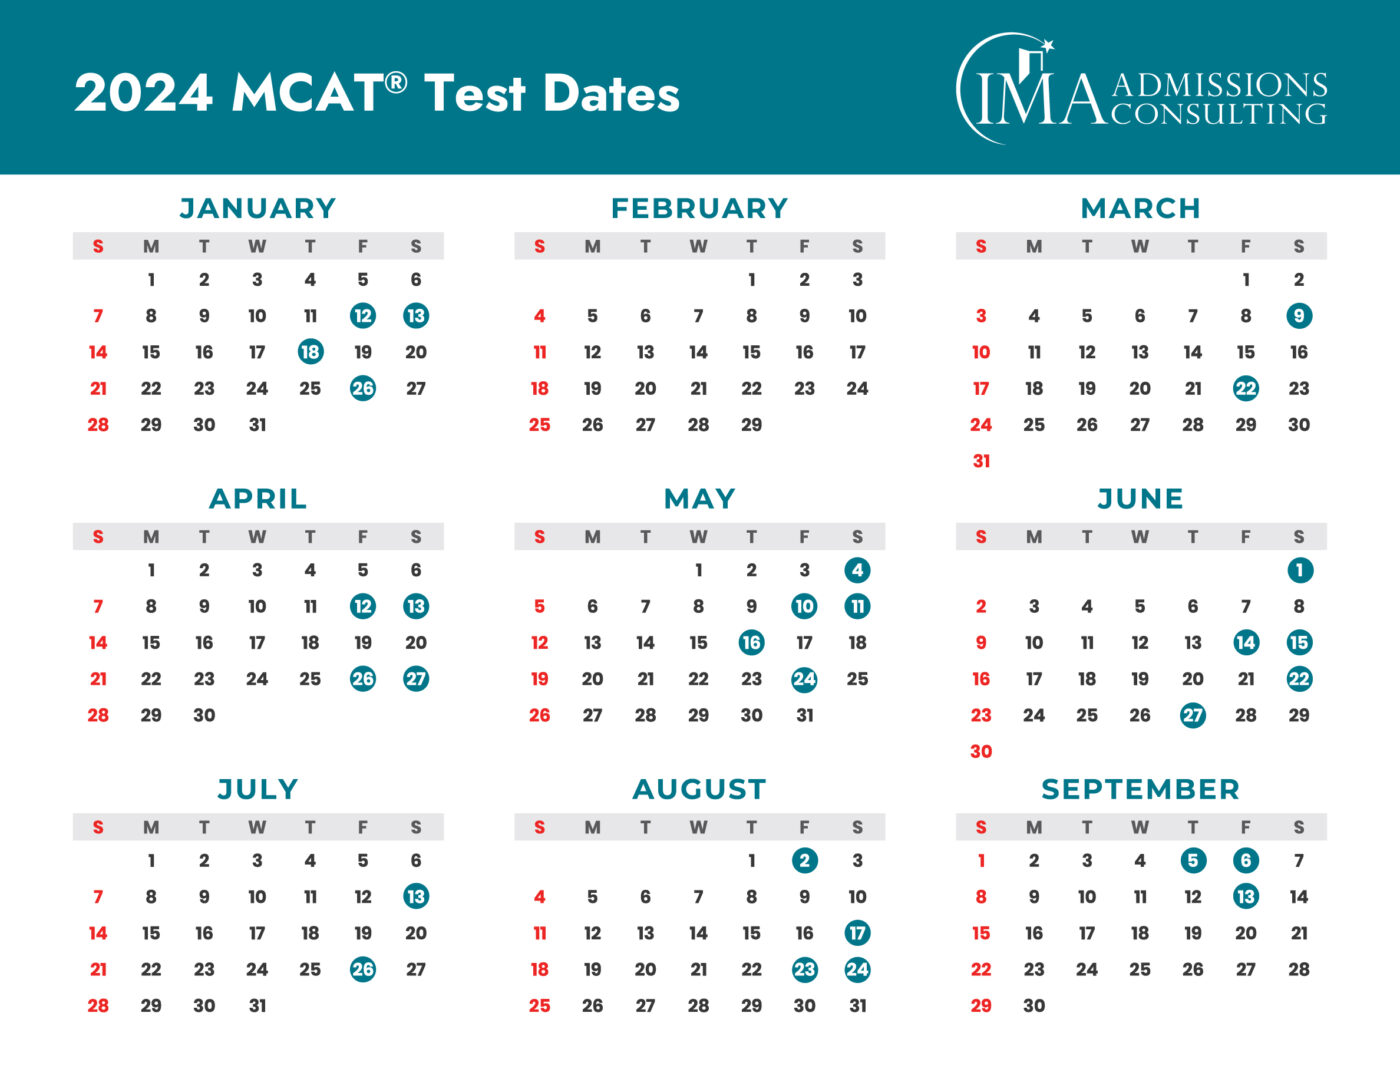 MCAT Test Dates 2024 and MCAT Score Release Dates 2024